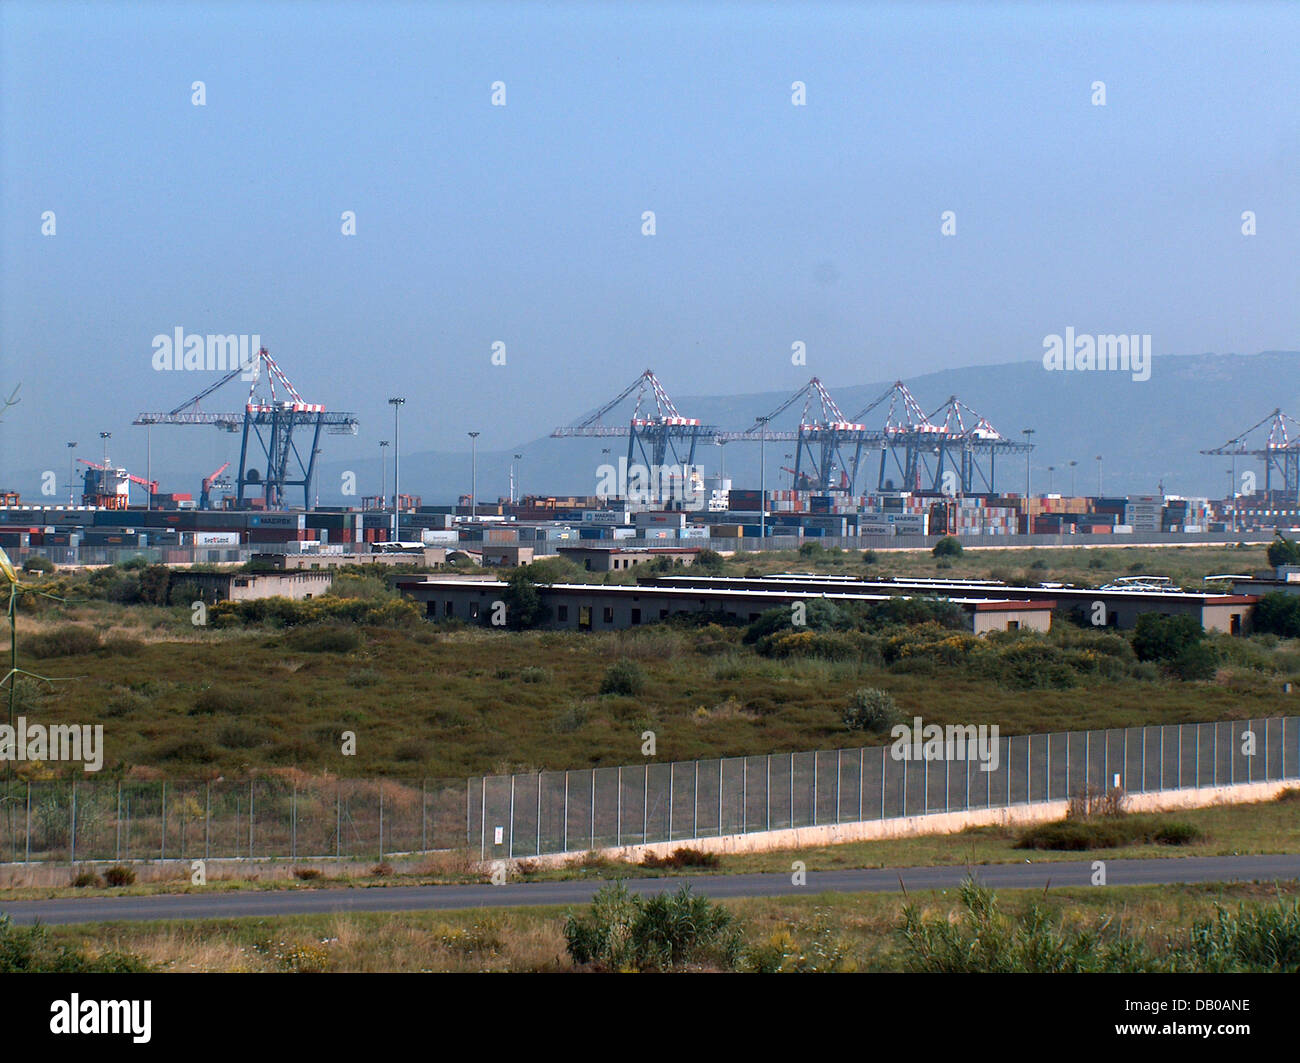 La photo montre le port à conteneurs grues à Gioia Tauro (Italie), 26 juin 2007. Photo : Lars Halbauer Banque D'Images